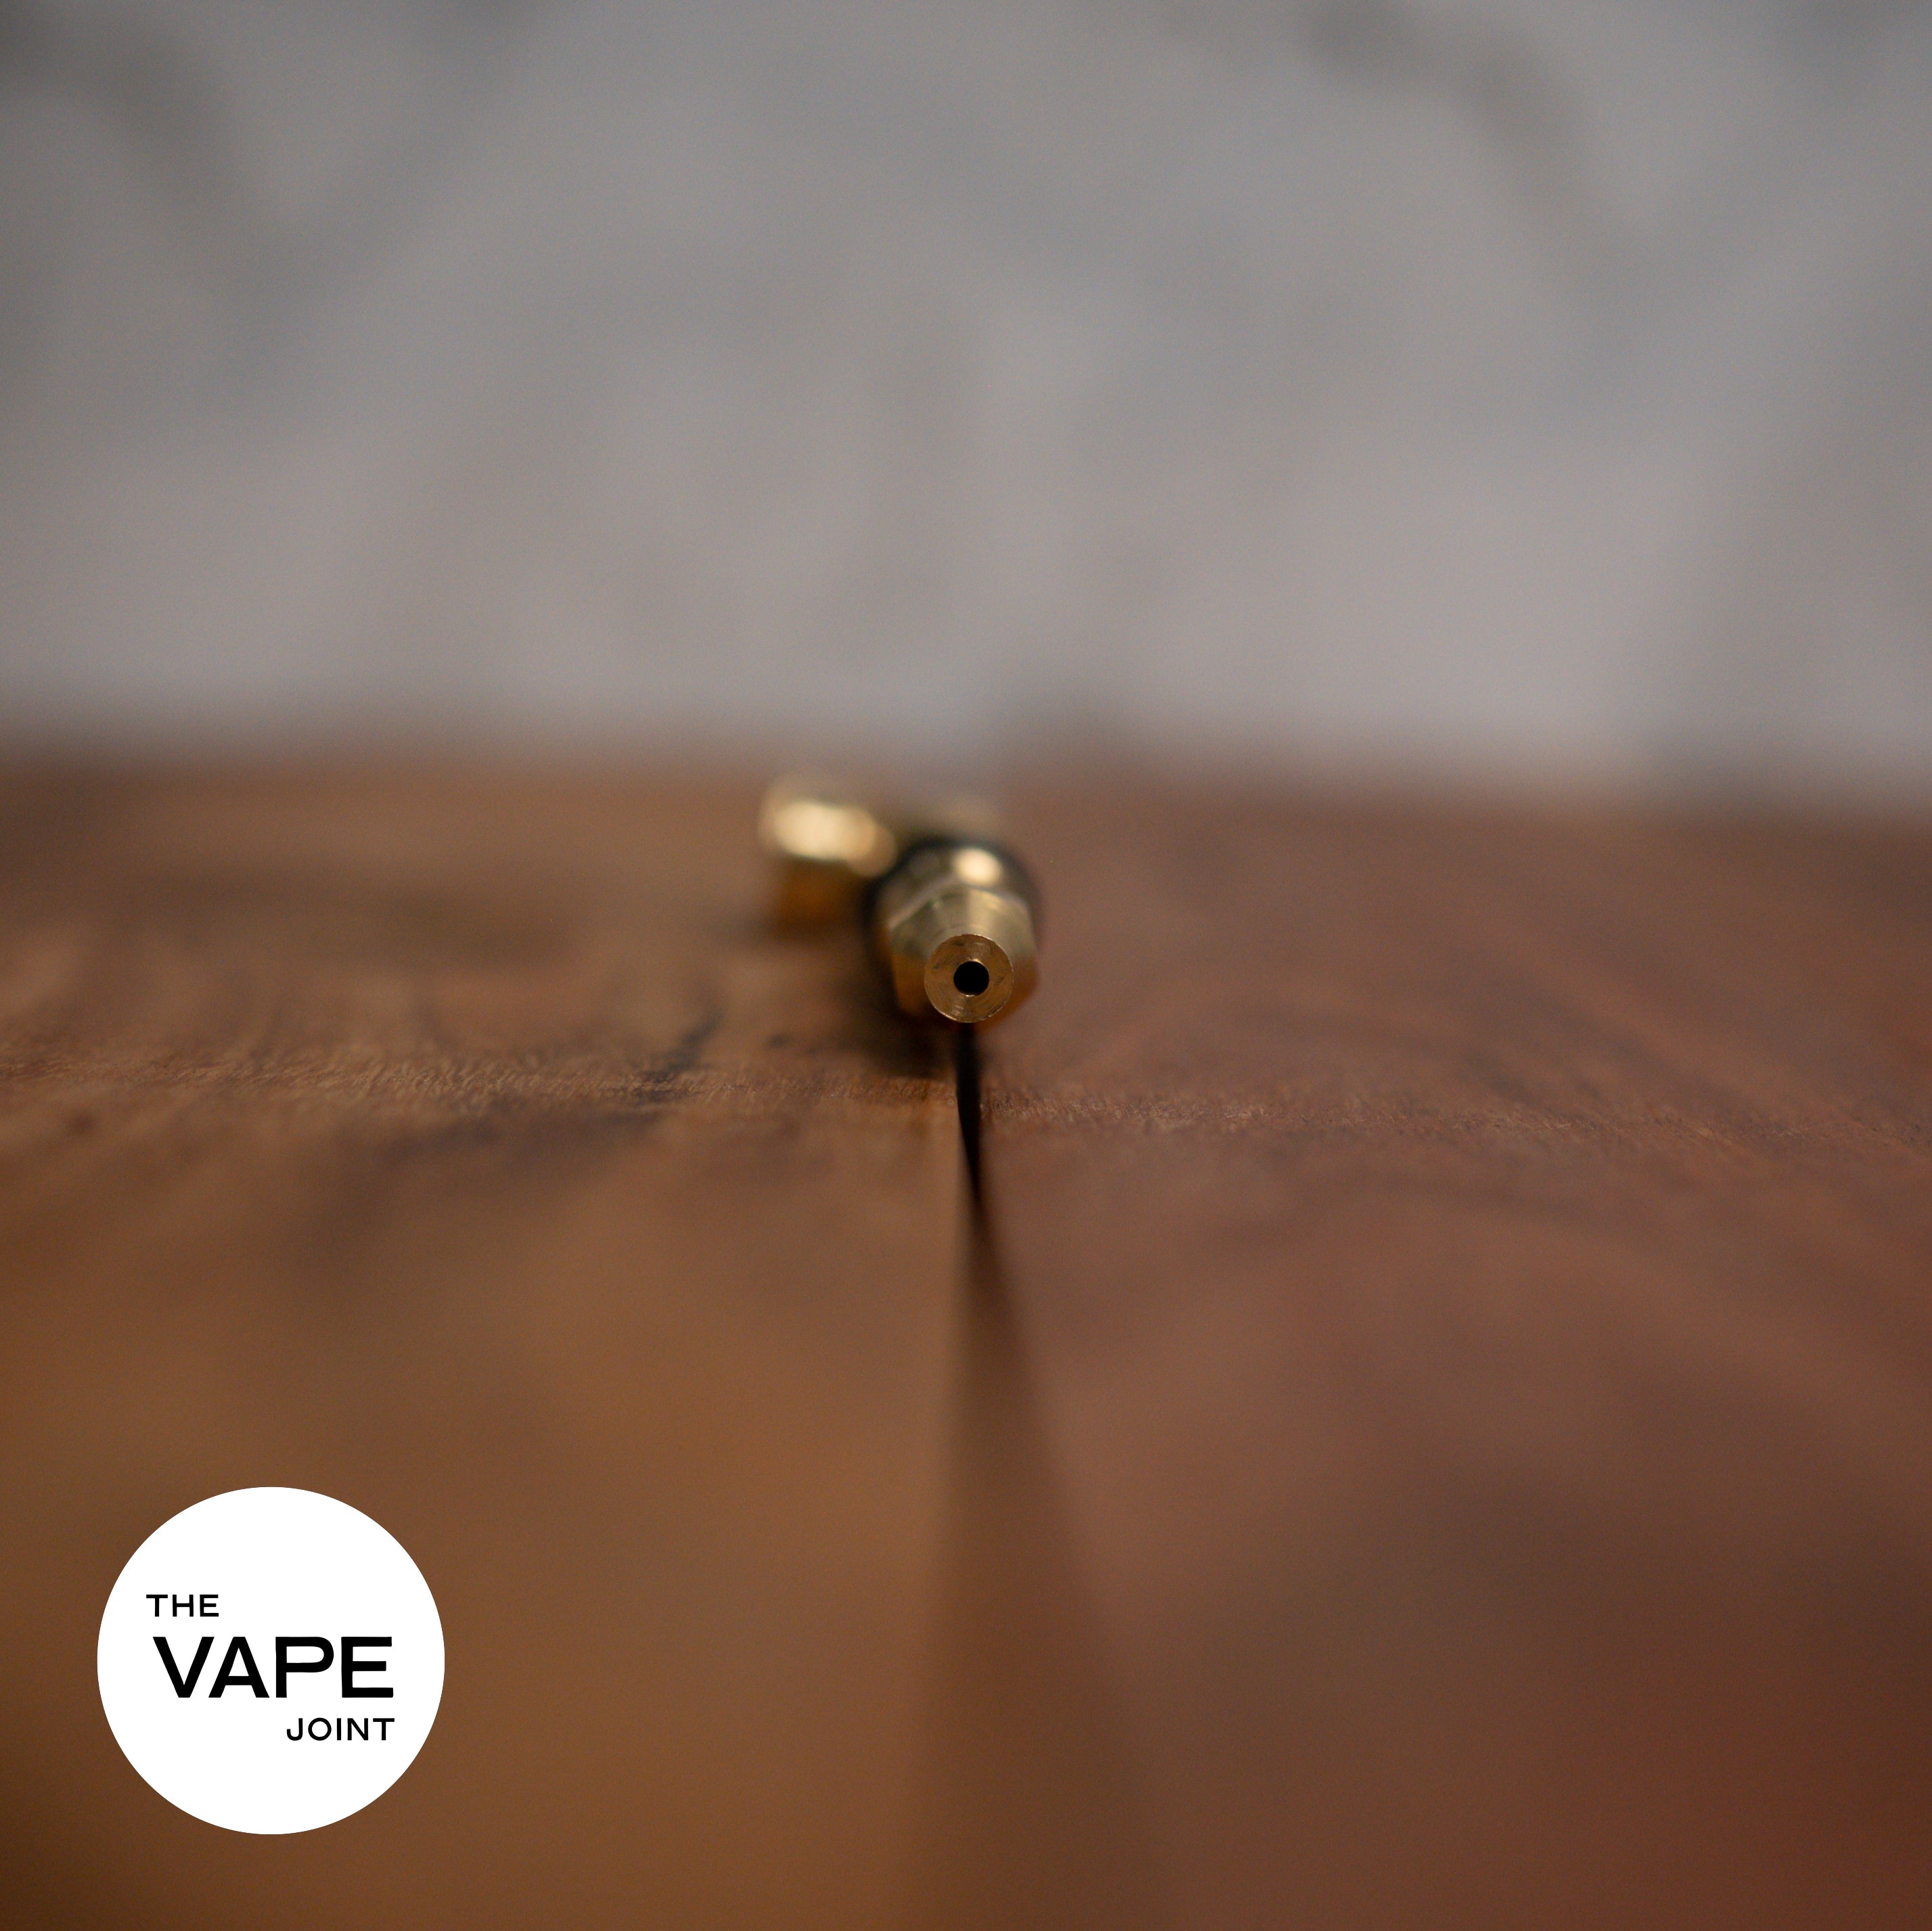 P685 - Brass Smoking Pipe With Grip